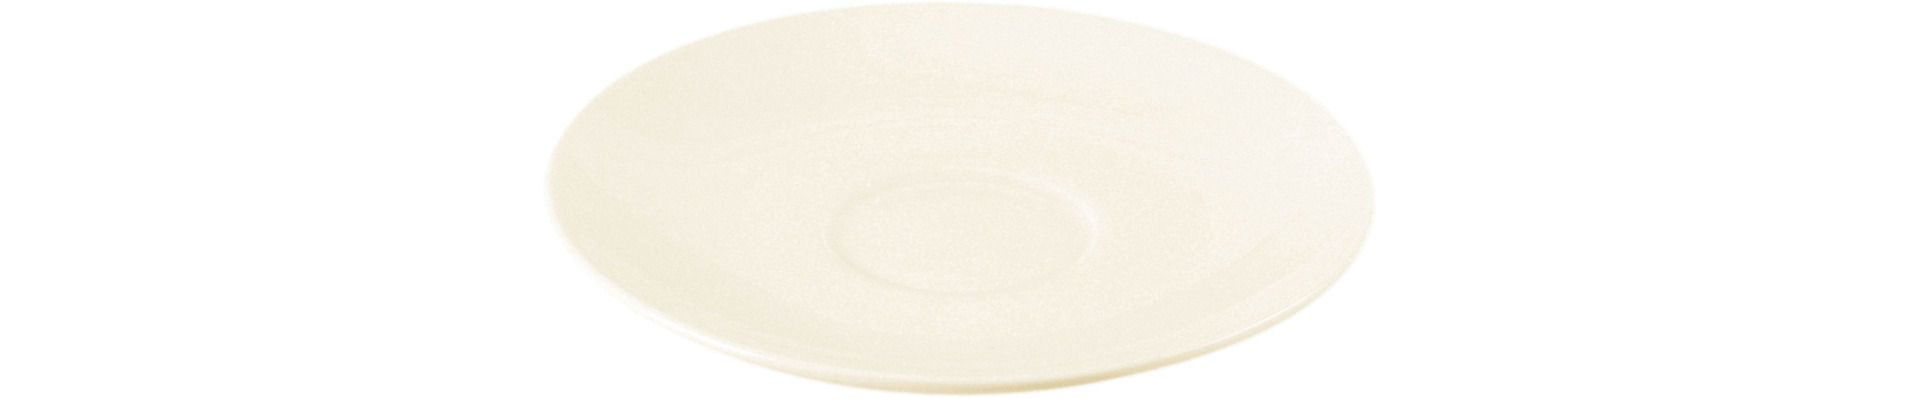 Suppen-Untertasse 160 mm plain-white für Suppentasse mit Deckel NNCS27